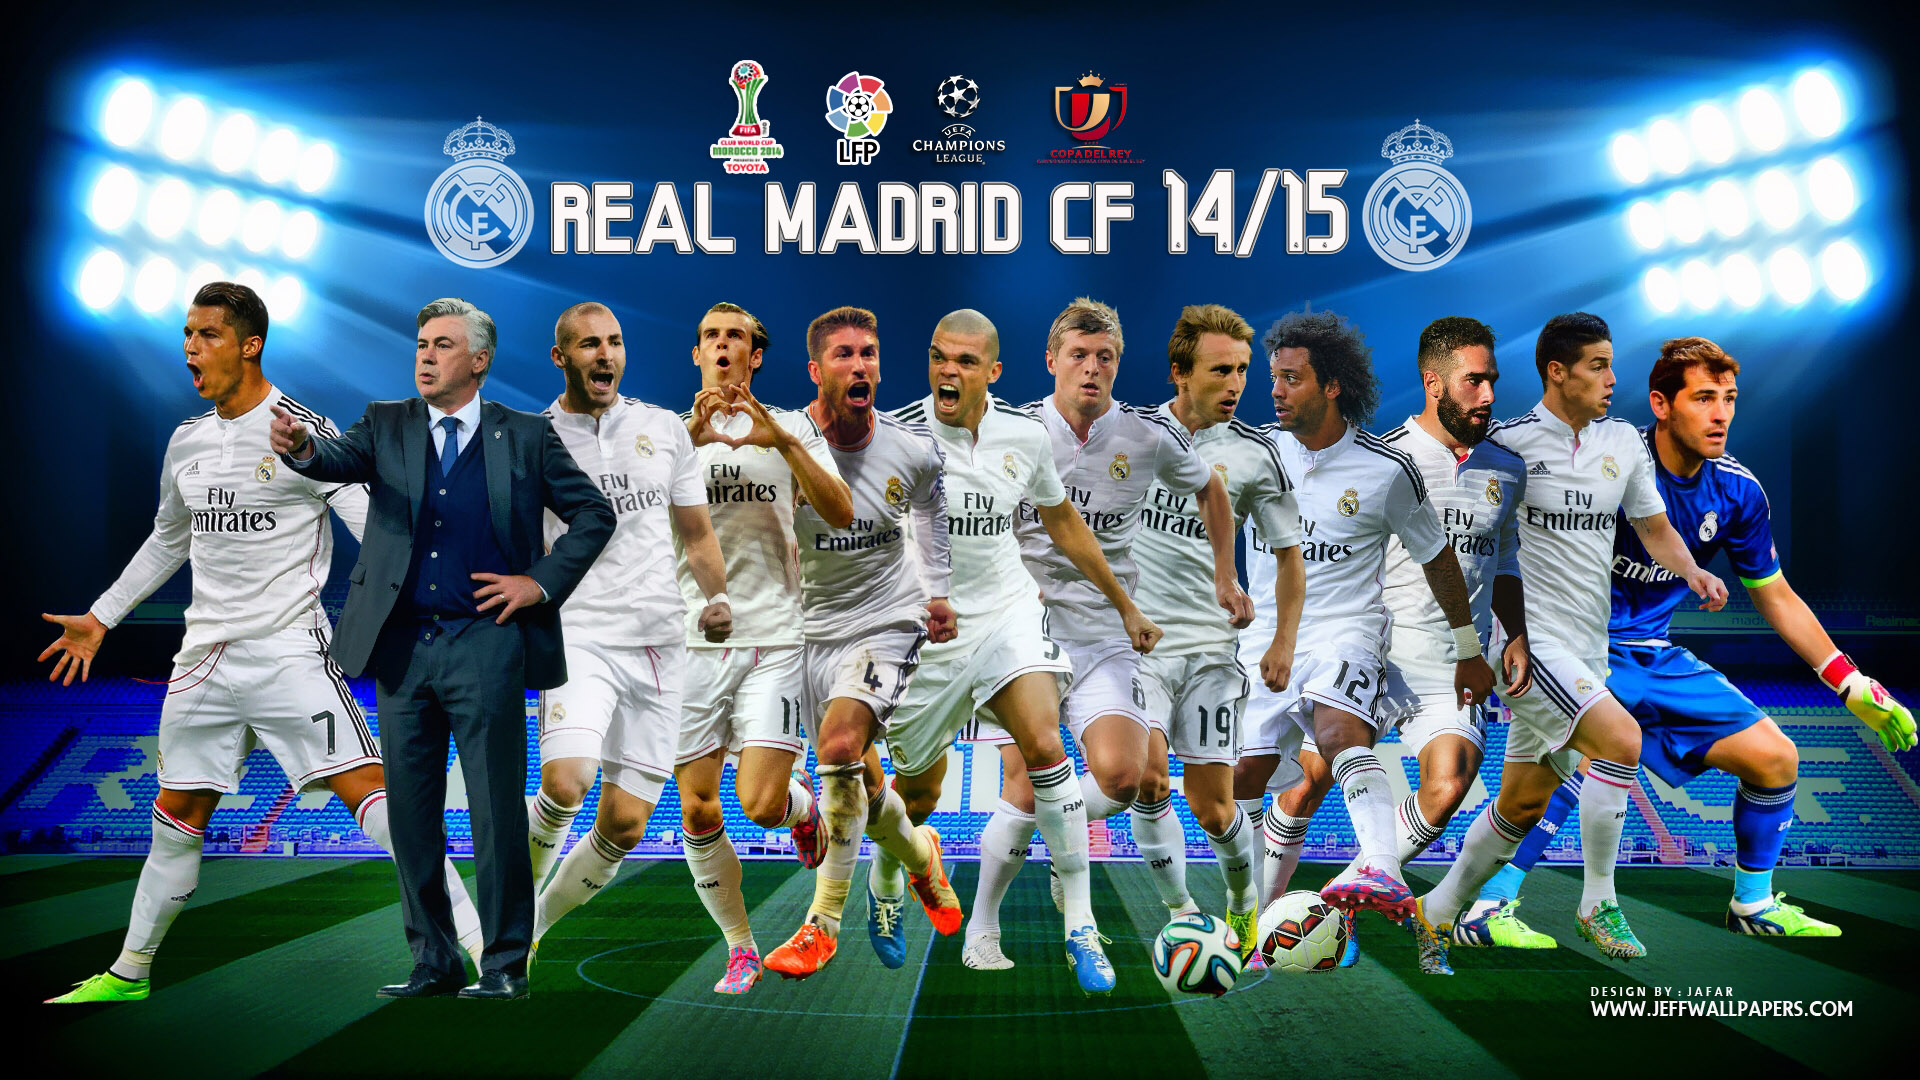 Real Madrid Wallpaper 2014 2015 WallpaperSafari